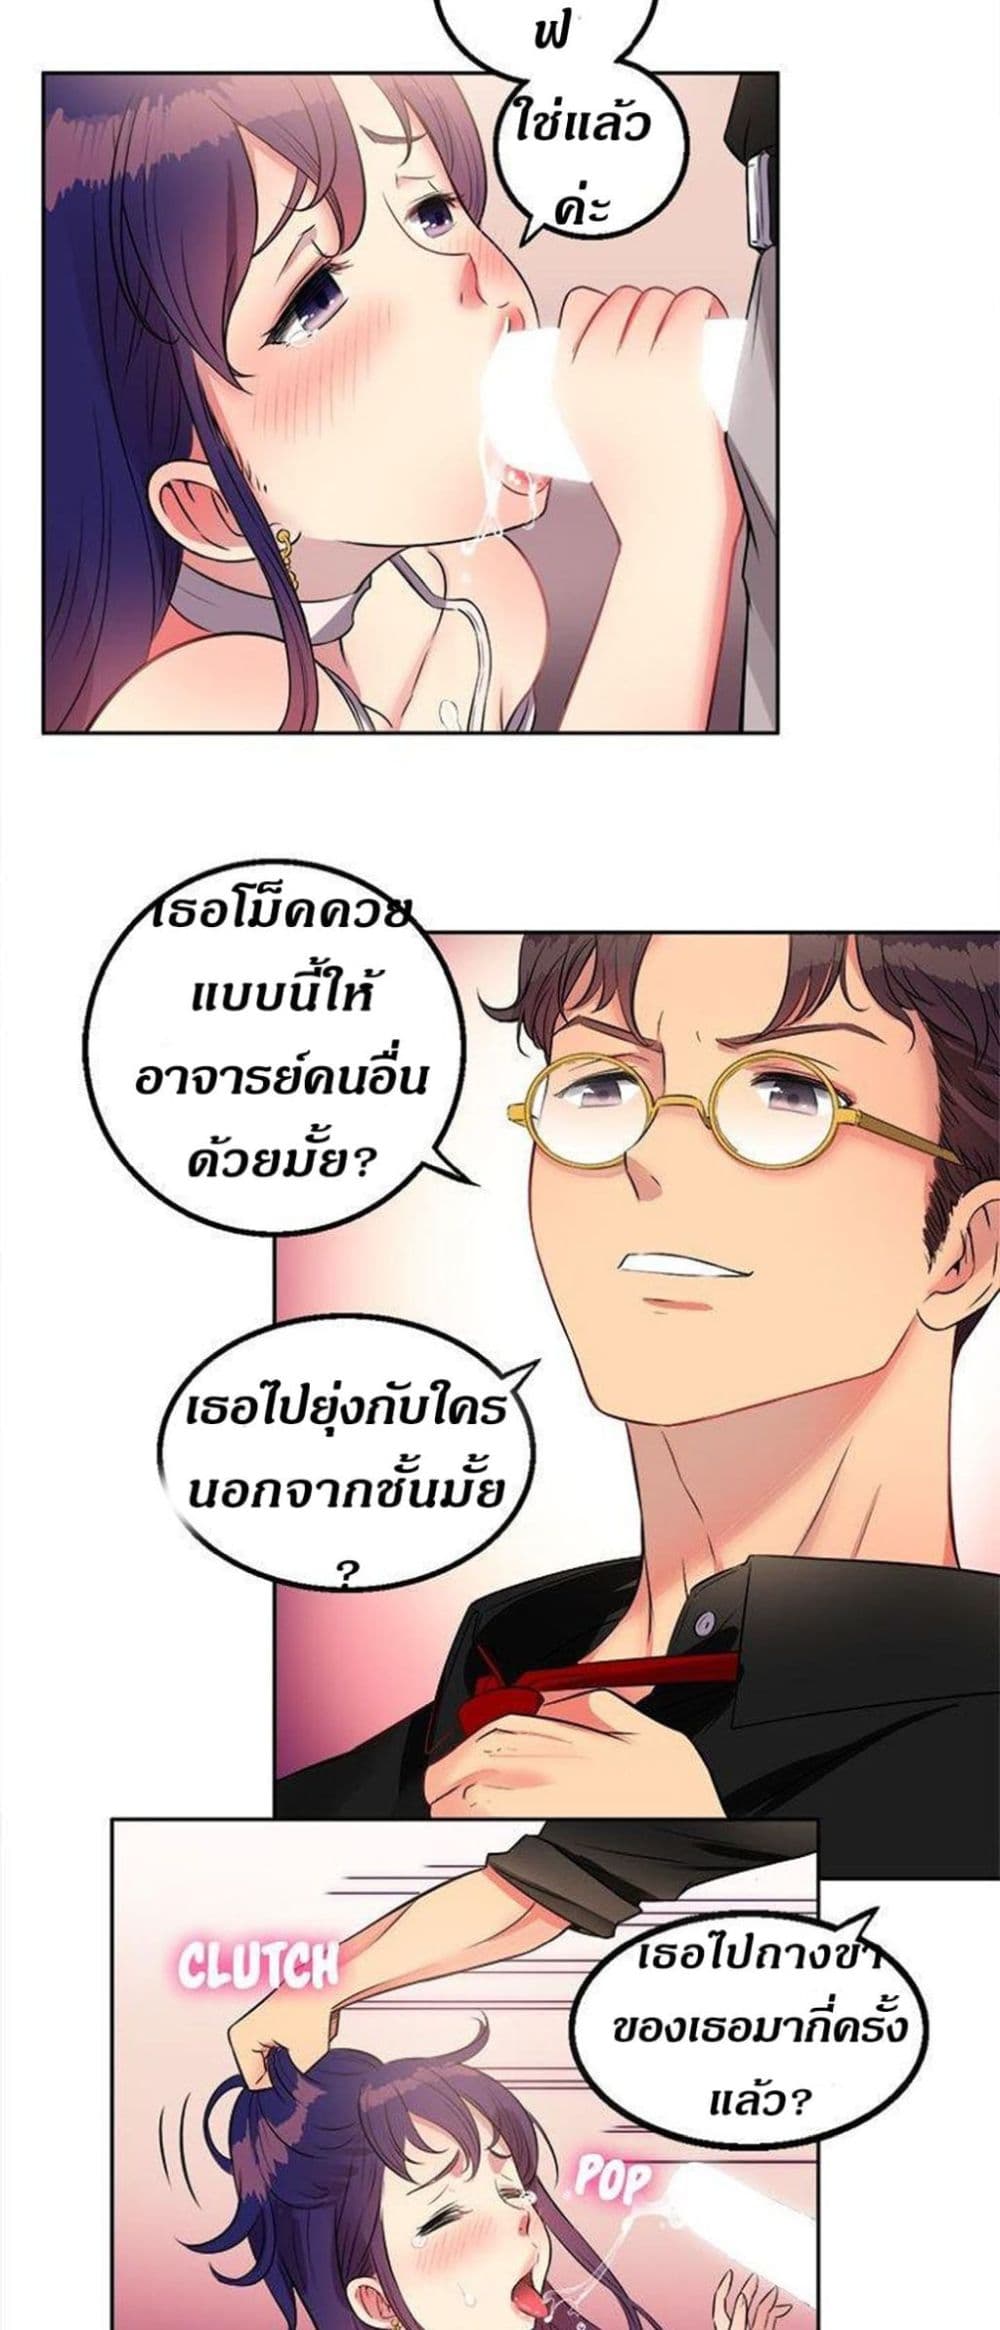 Yuri’s Part Time Job